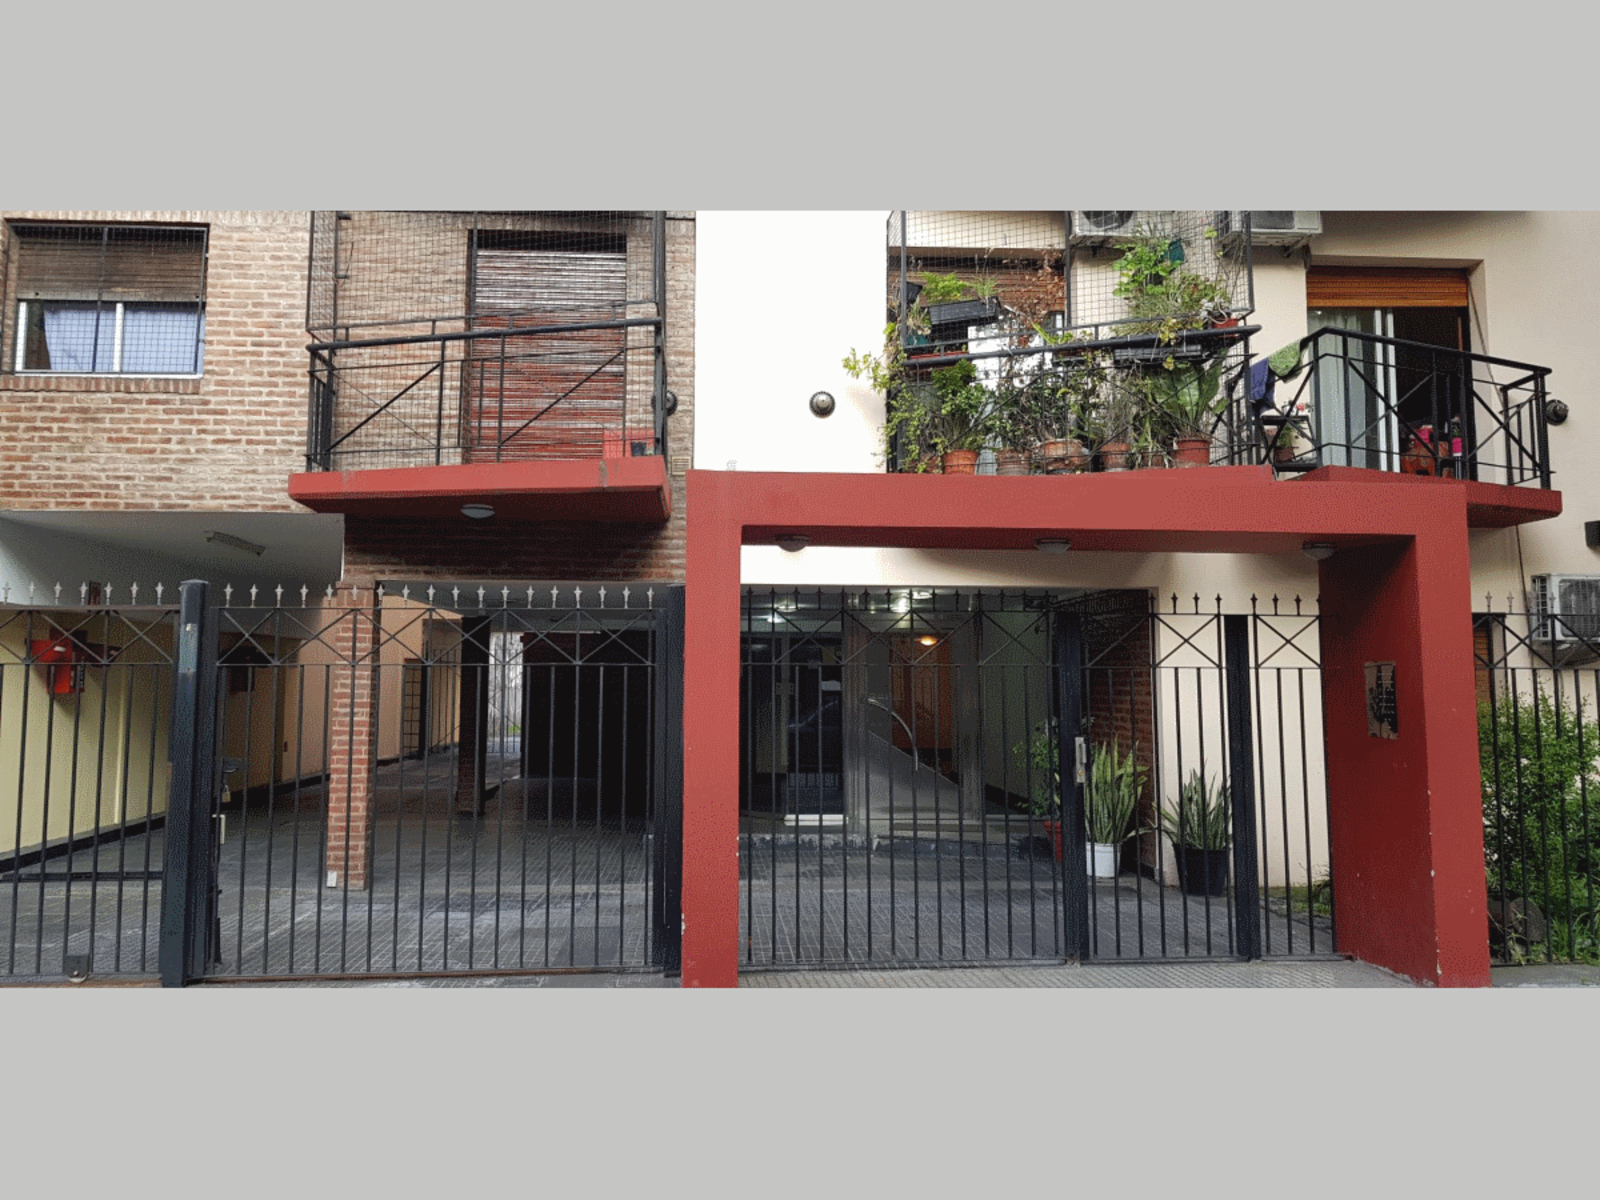 NUEVO PRECIO - Departamento en Venta en Almagro 1 ambiente 35 m2 + balcón al frente, con cochera - M